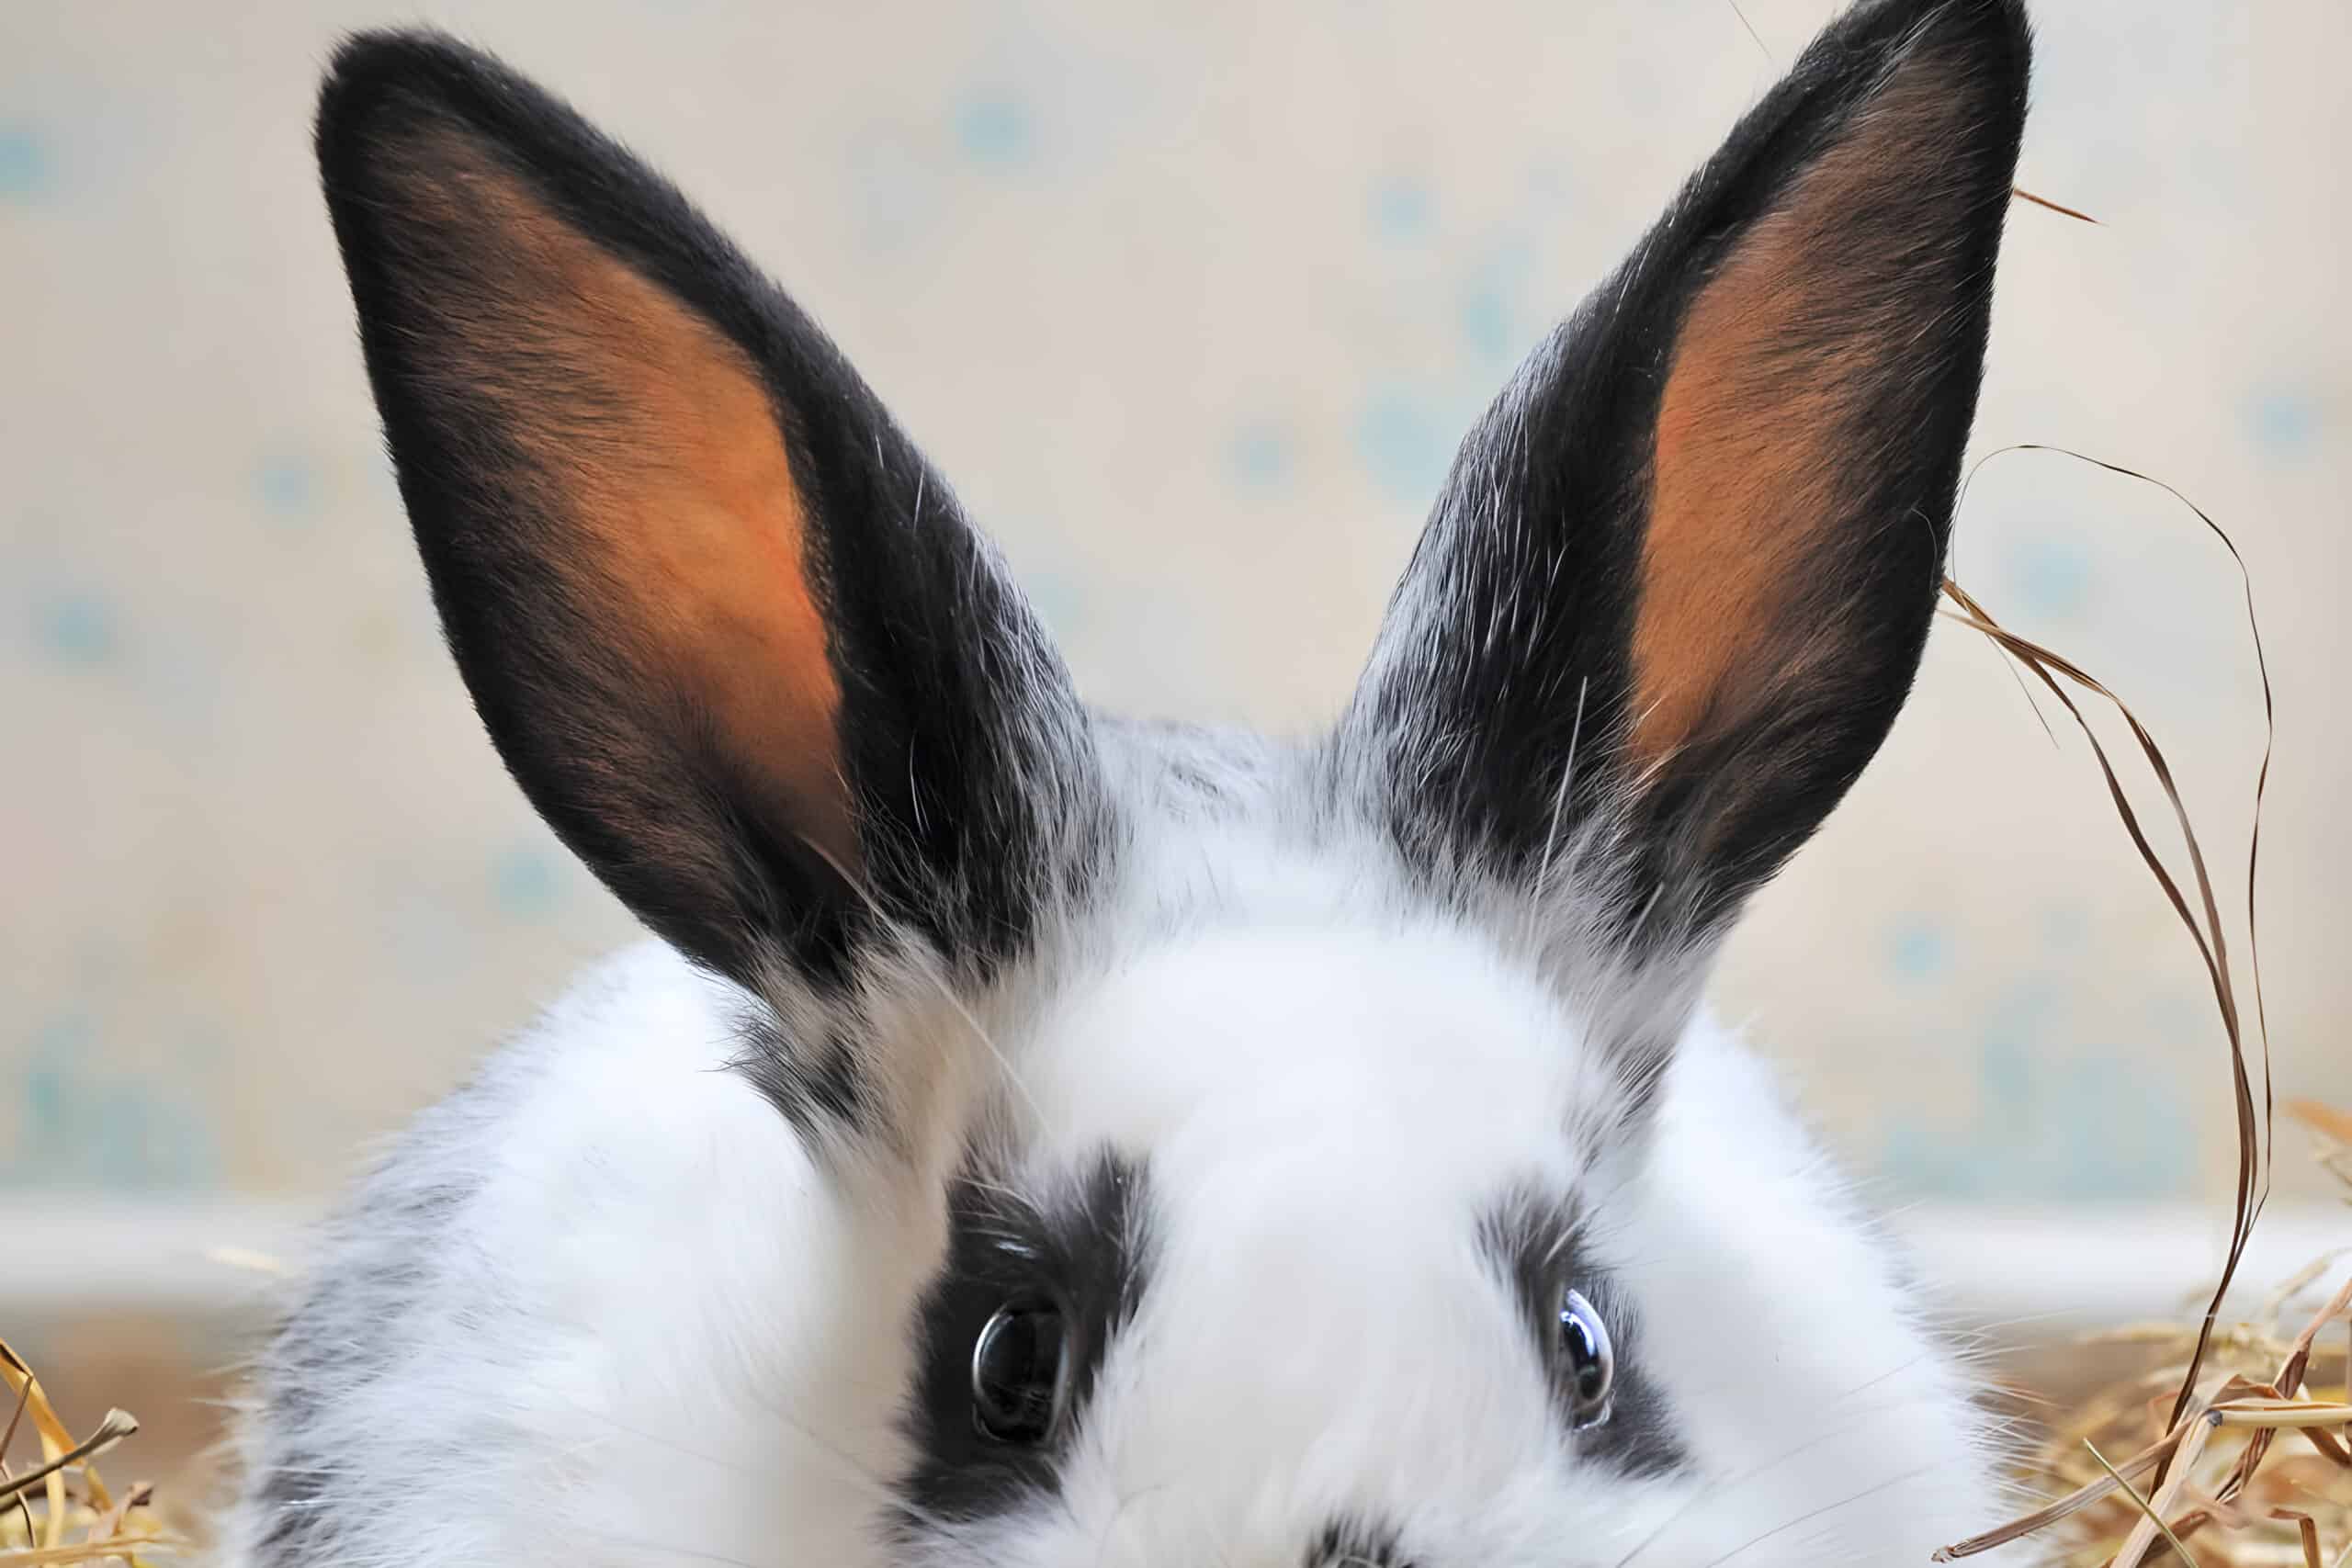 tularemia in rabbits